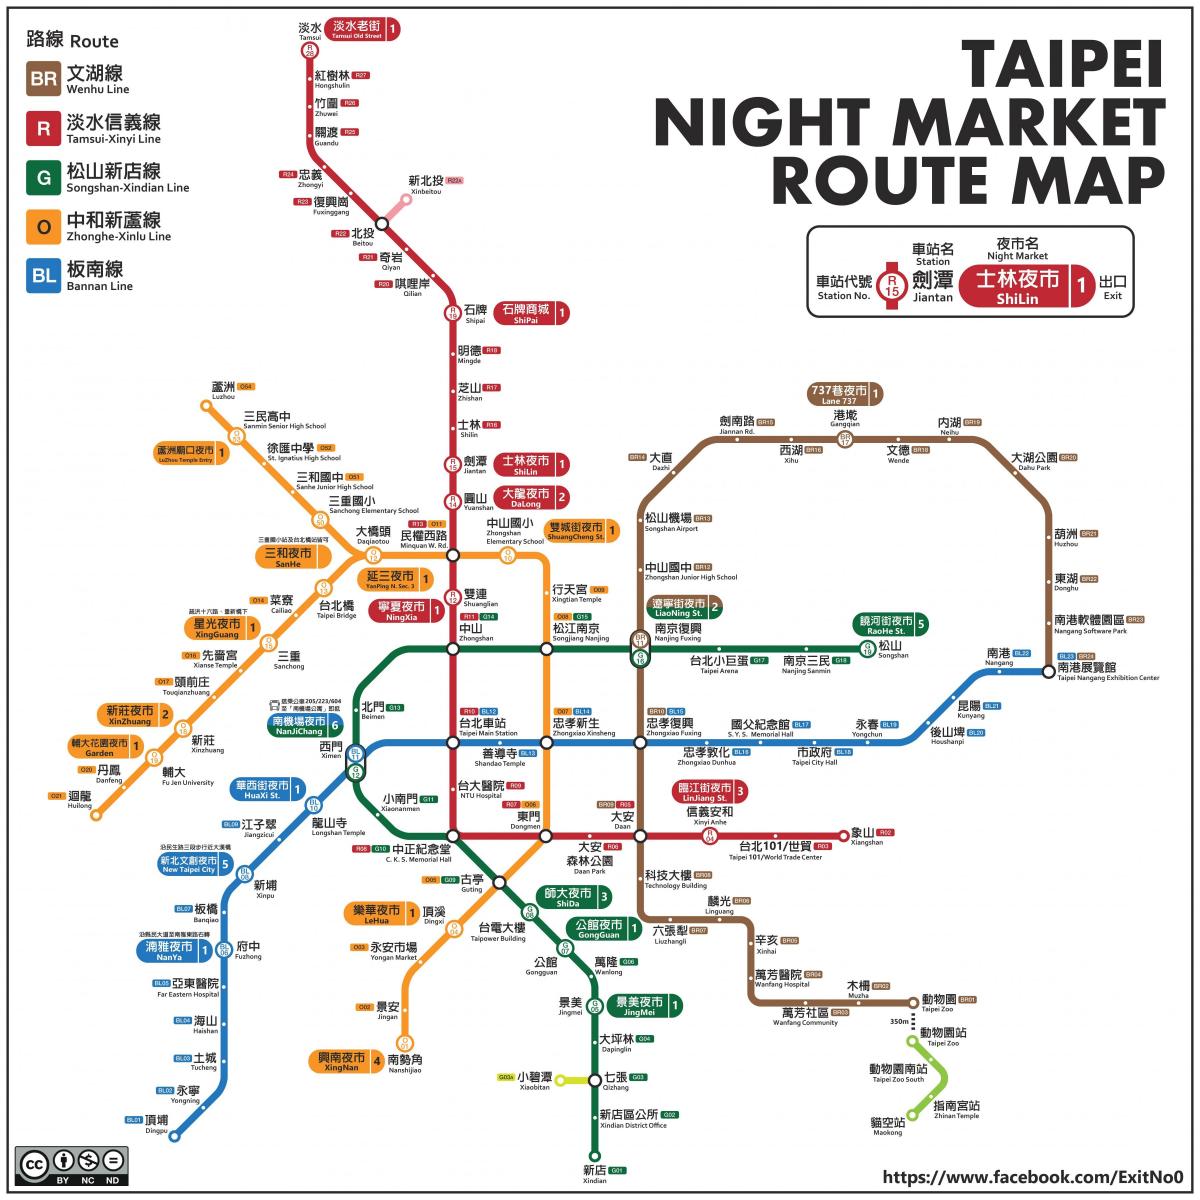 नक्शा ताइपे की रात बाजार